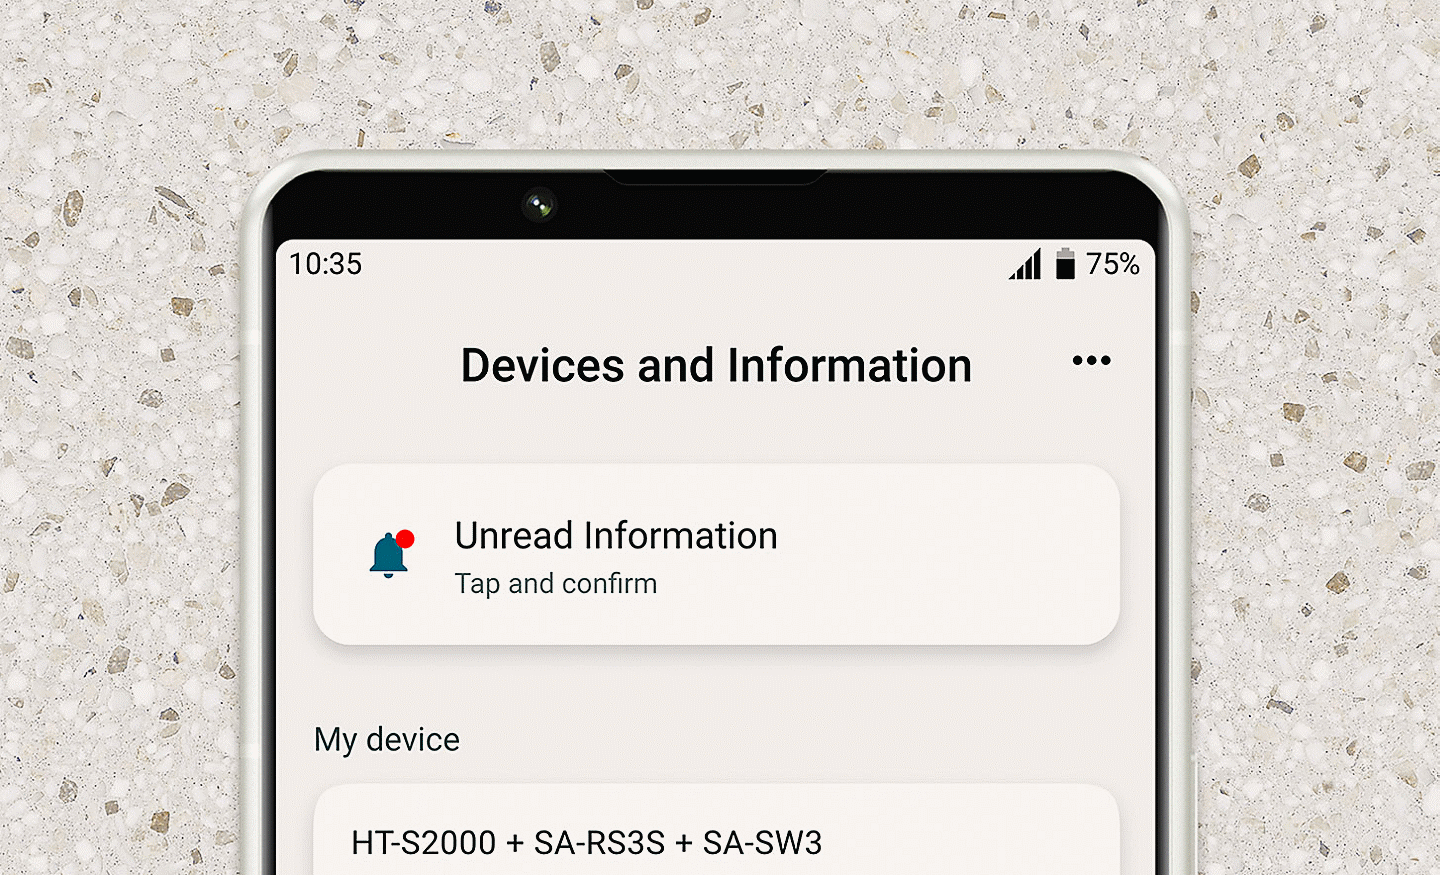 صورة مقربة للجزء العلوي من هاتف محمول مع قائمة Devices and Information (الأجهزة والمعلومات) على الشاشة